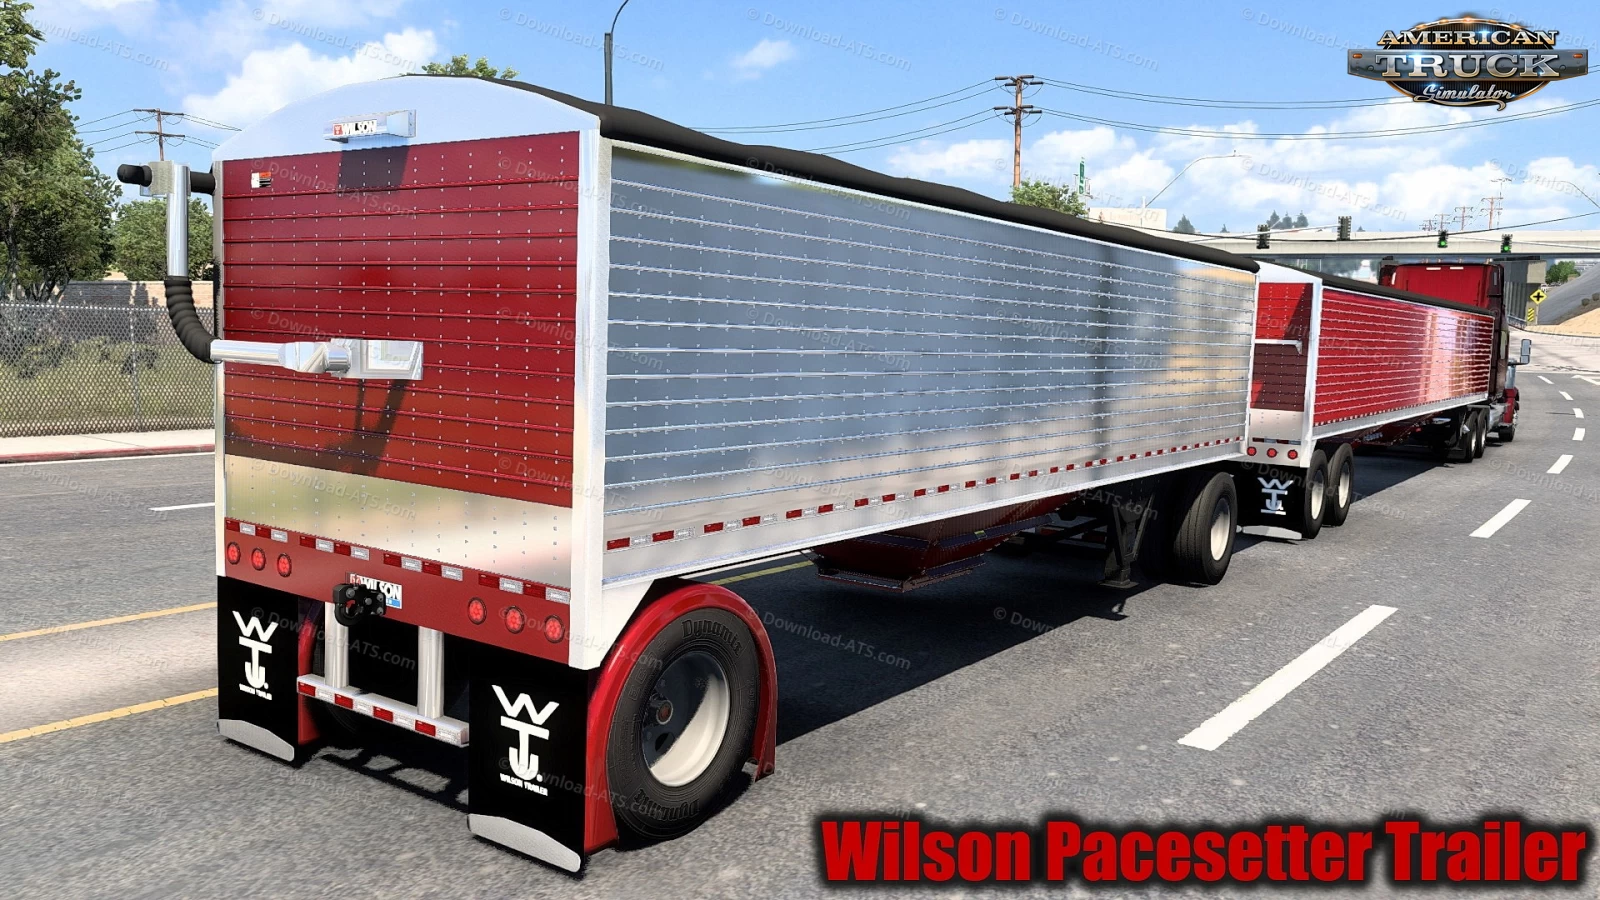 Wilson Pacesetter Trailer v1.3 (1.48.x) for ATS